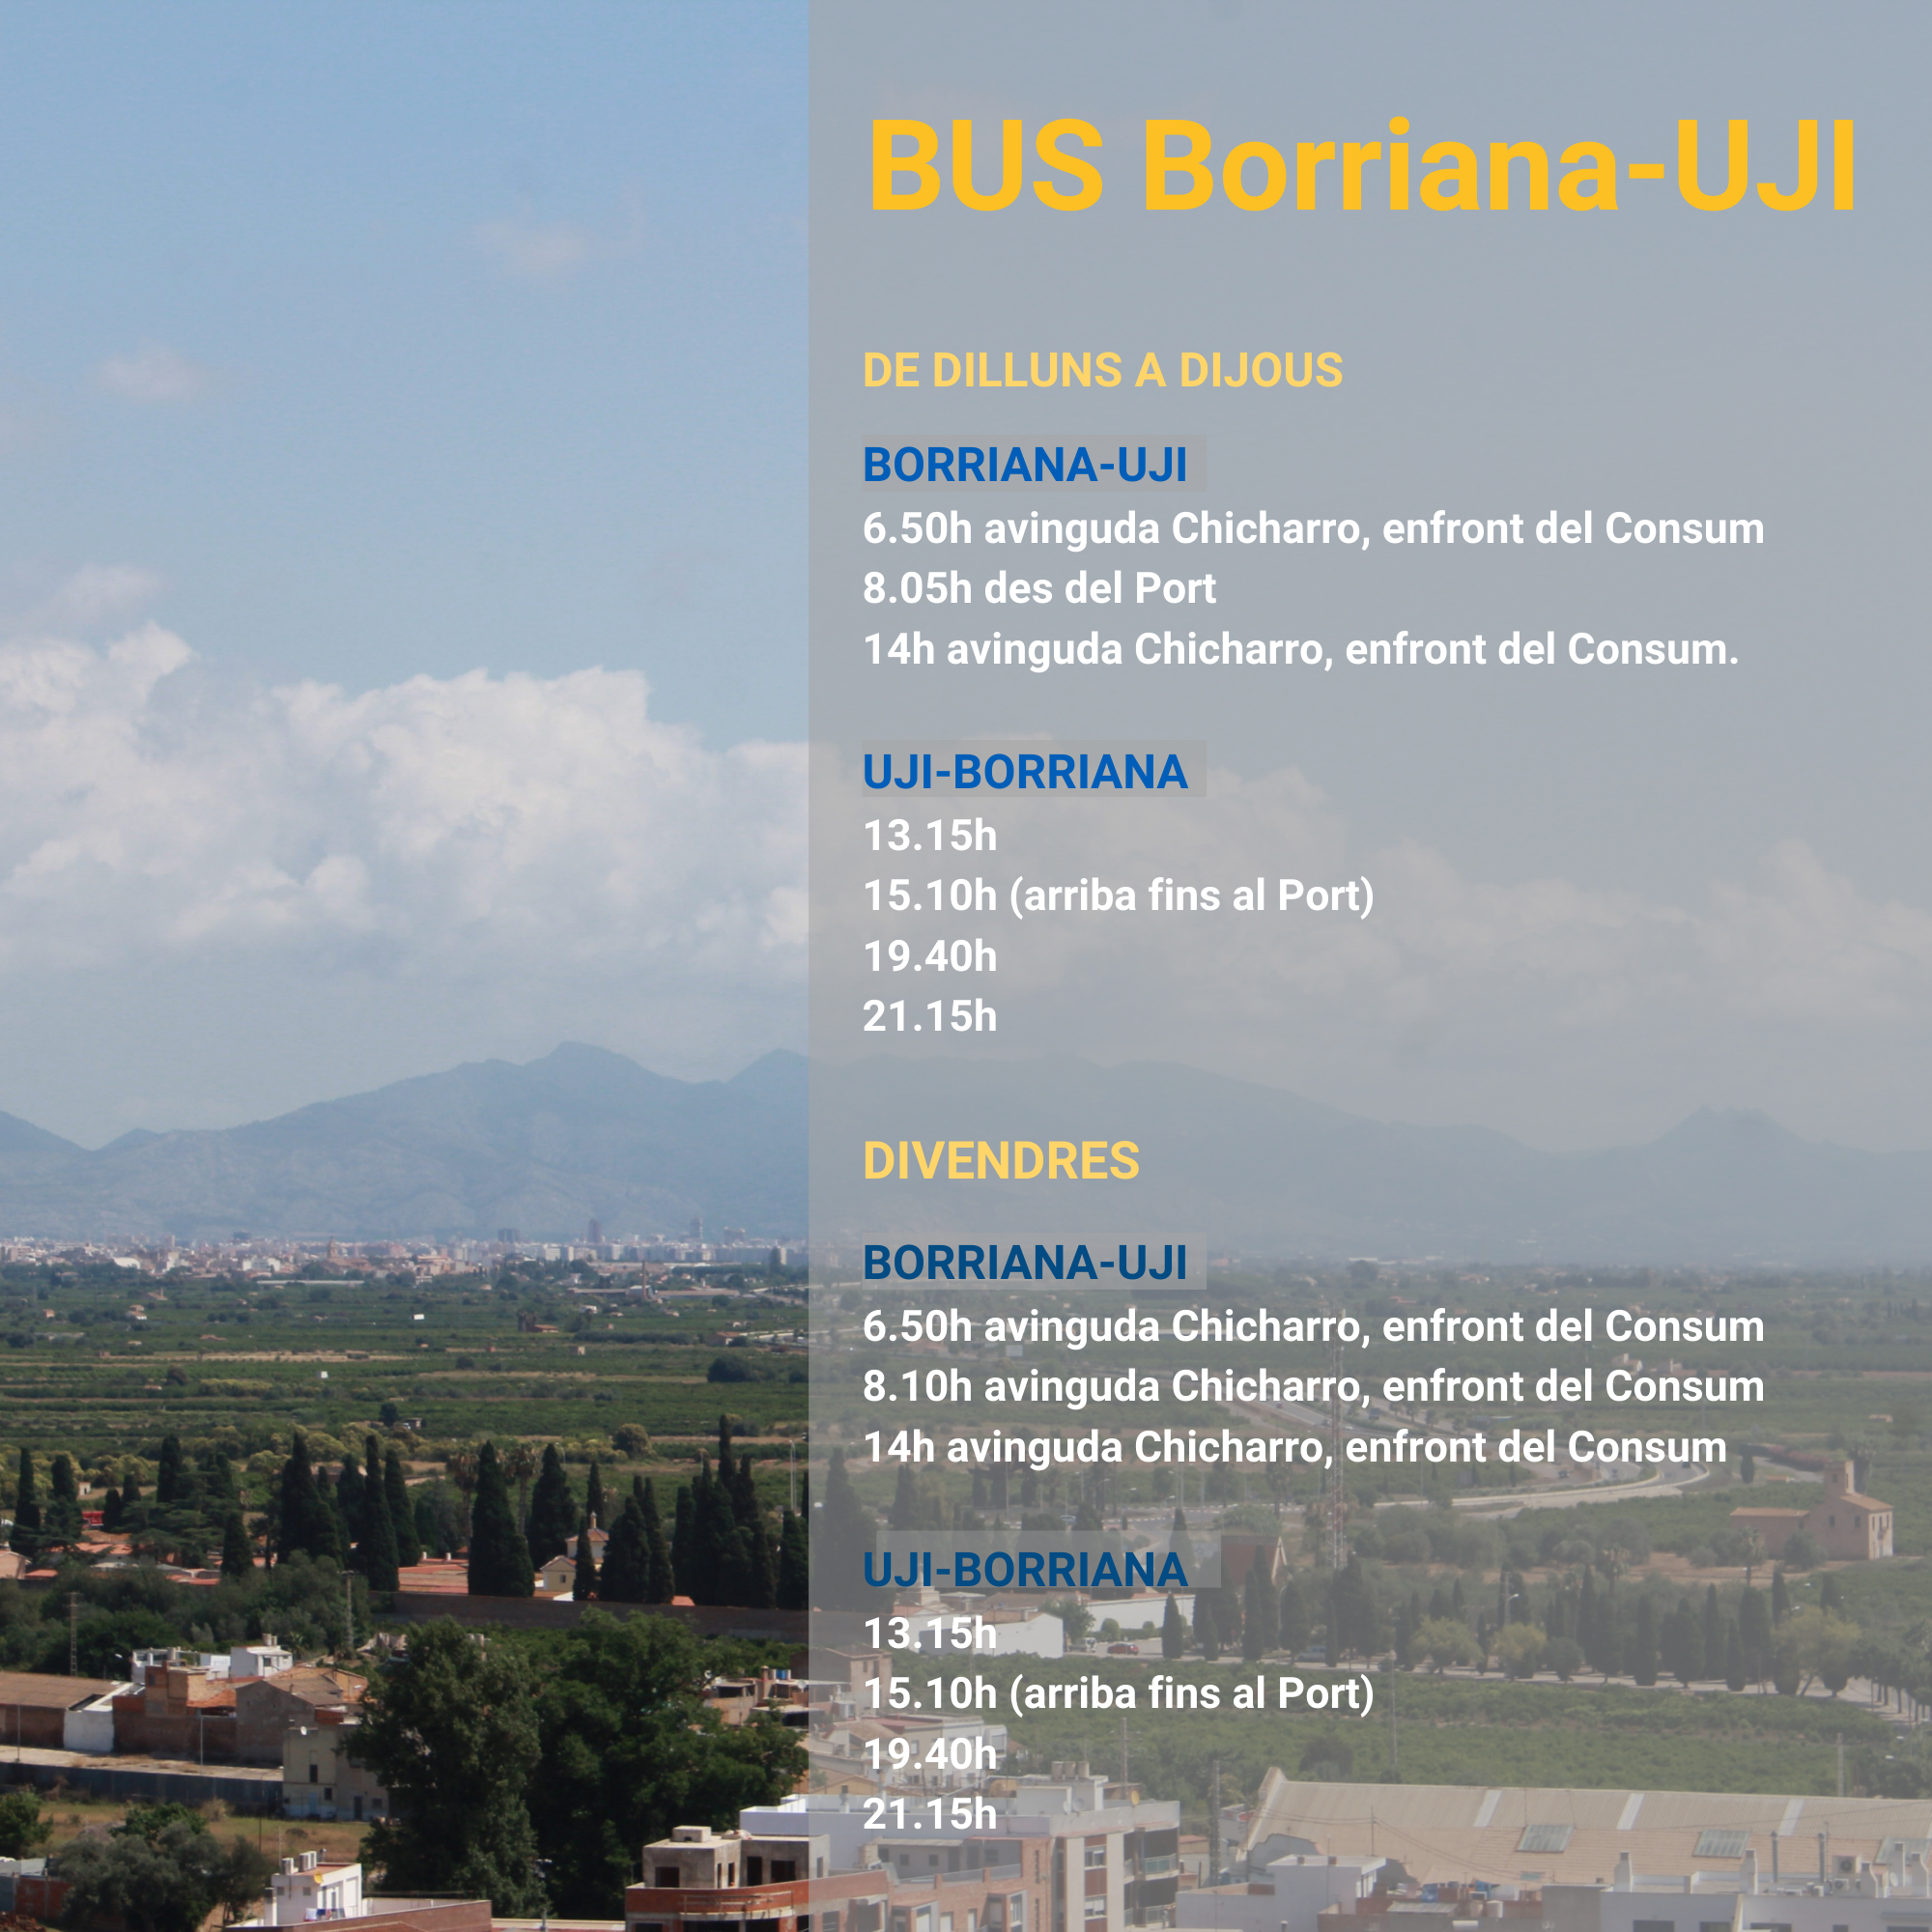 El Ayuntamiento abre el plazo para solicitar las tarjetas del bus Borriana-UJI 2021